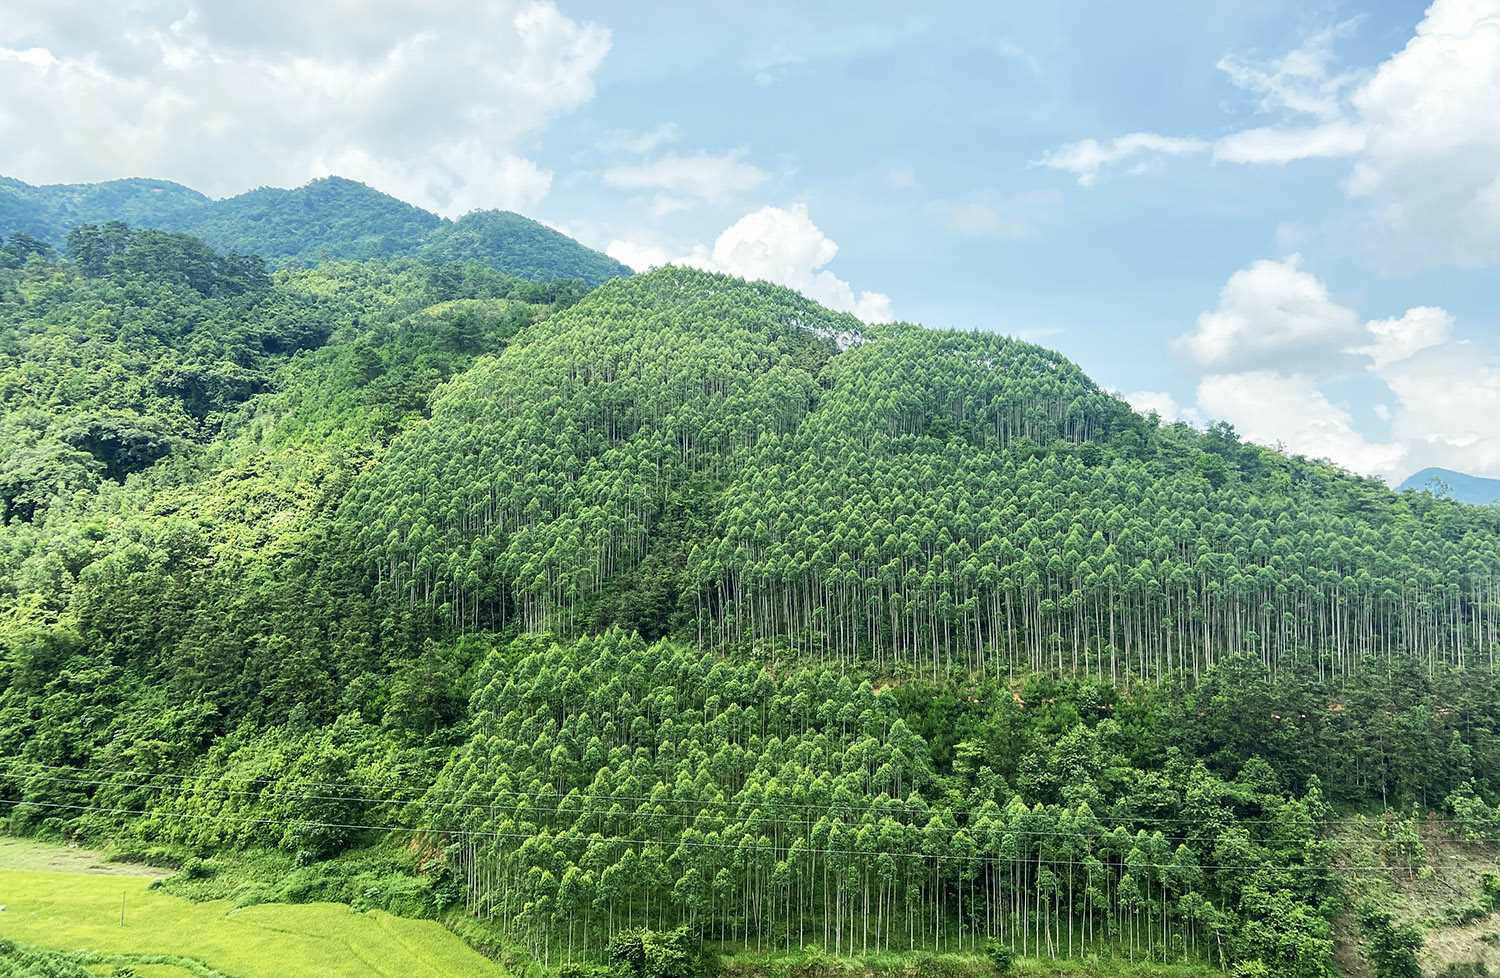 Trình bày mục đích sử dụng và nêu ví dụ minh họa các loại rừng phổ biến ở Việt Nam